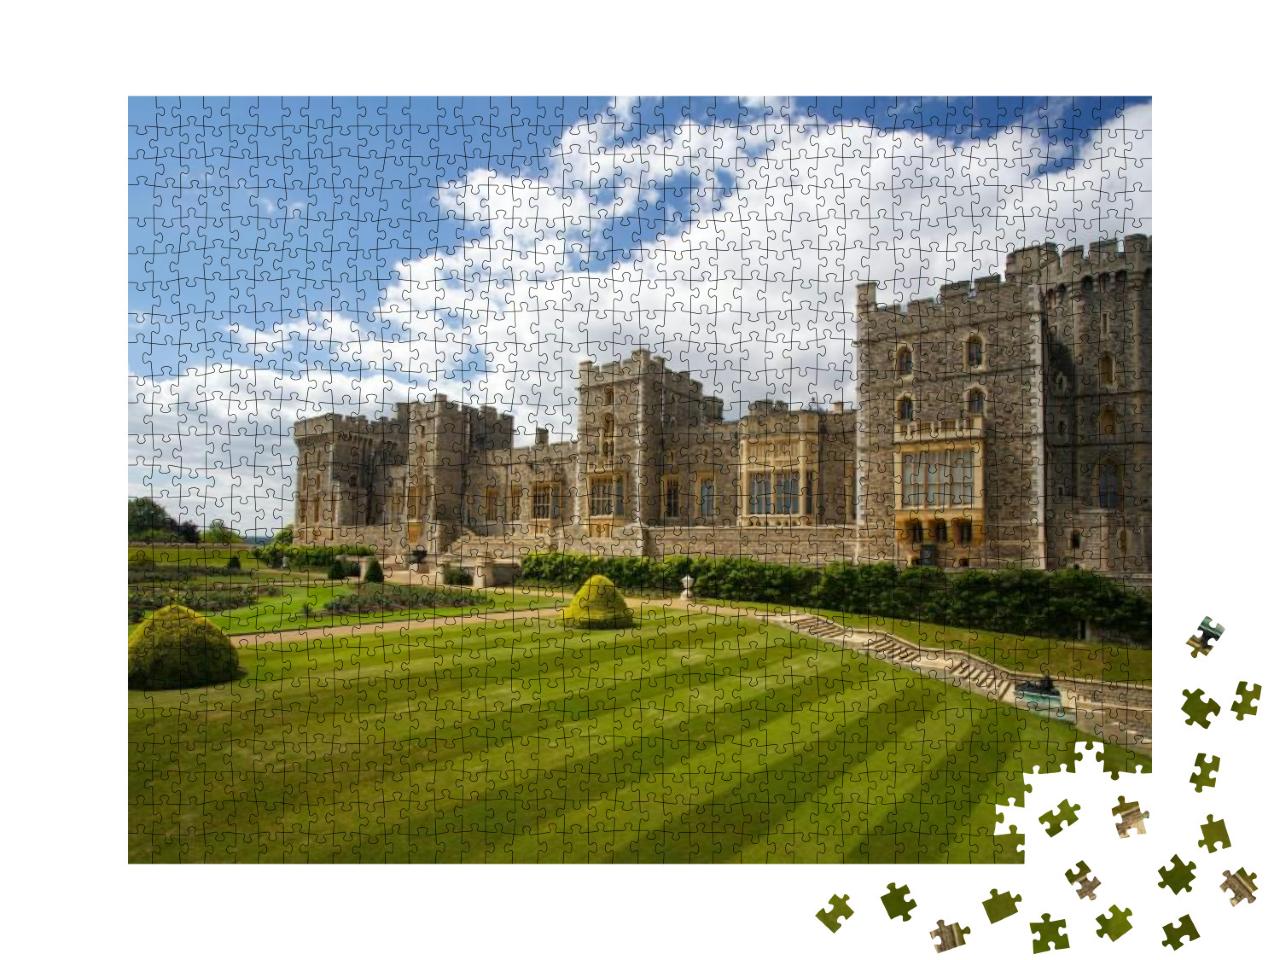 Puzzle 1000 Teile „Das eindrucksvolle Schloss Windsor bei London, Vereinigtes Königreich“